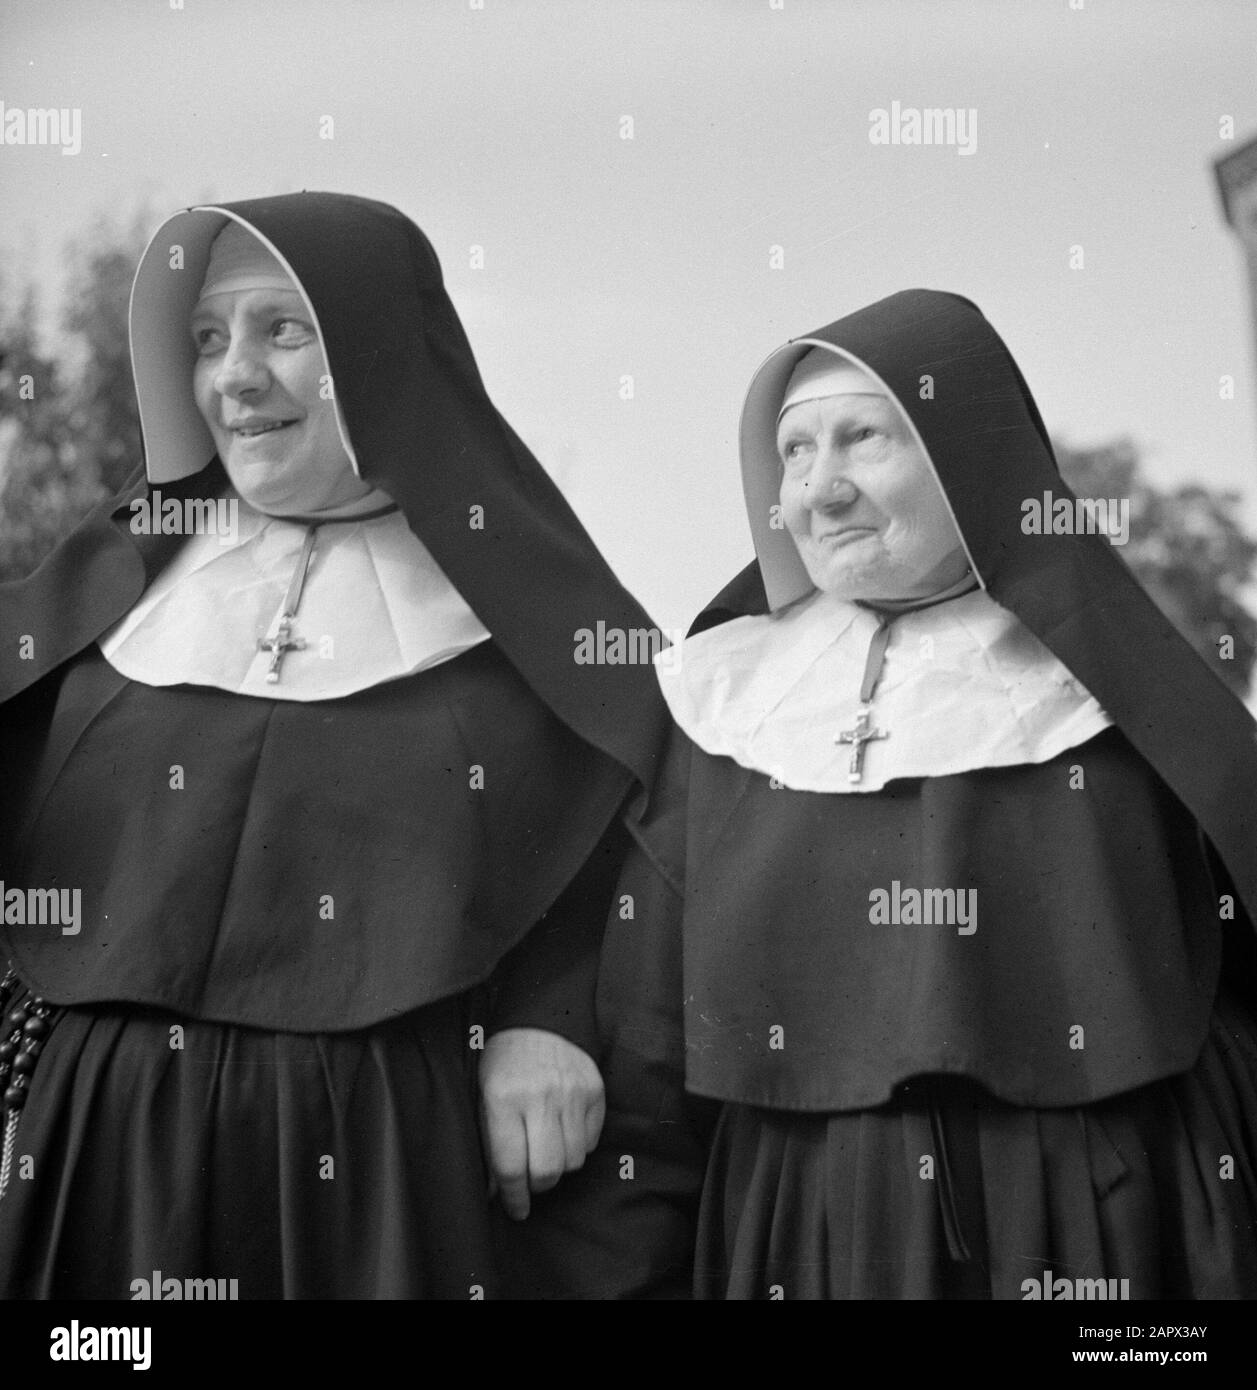 Reconstruction d'un portrait unnery de deux religieuses Date : 1940 lieu : France mots clés : religieuses Banque D'Images